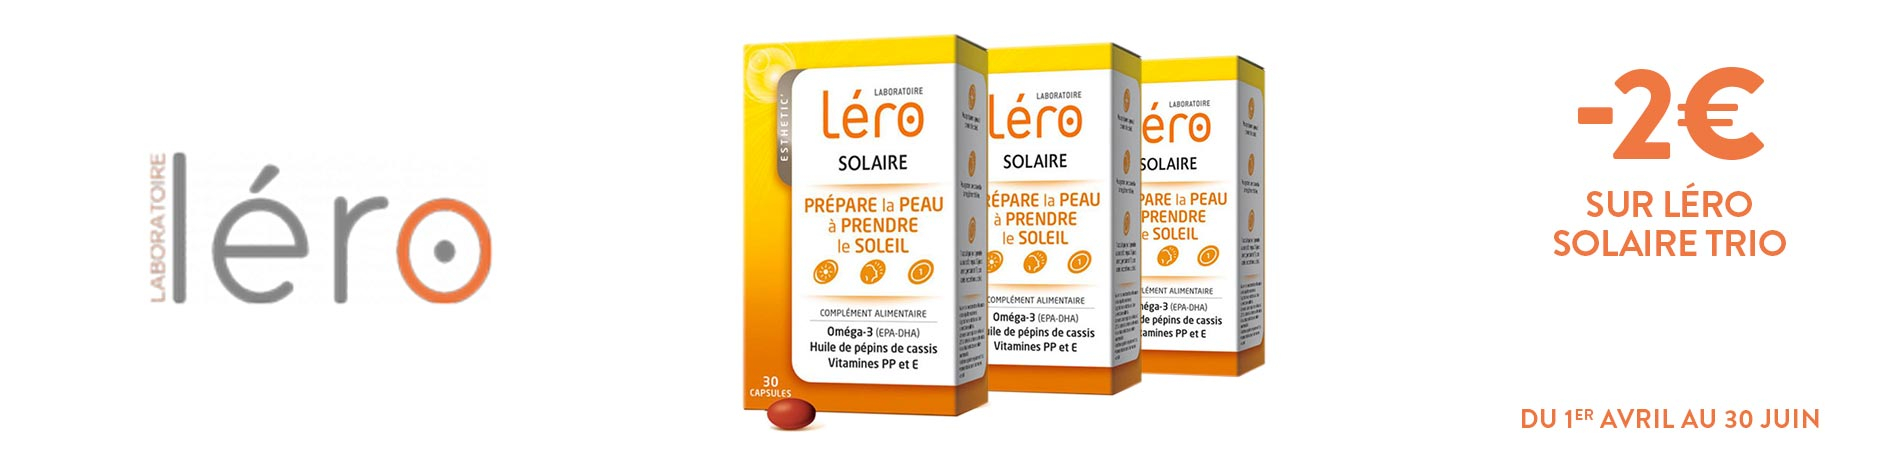 Promotion Lero solaire